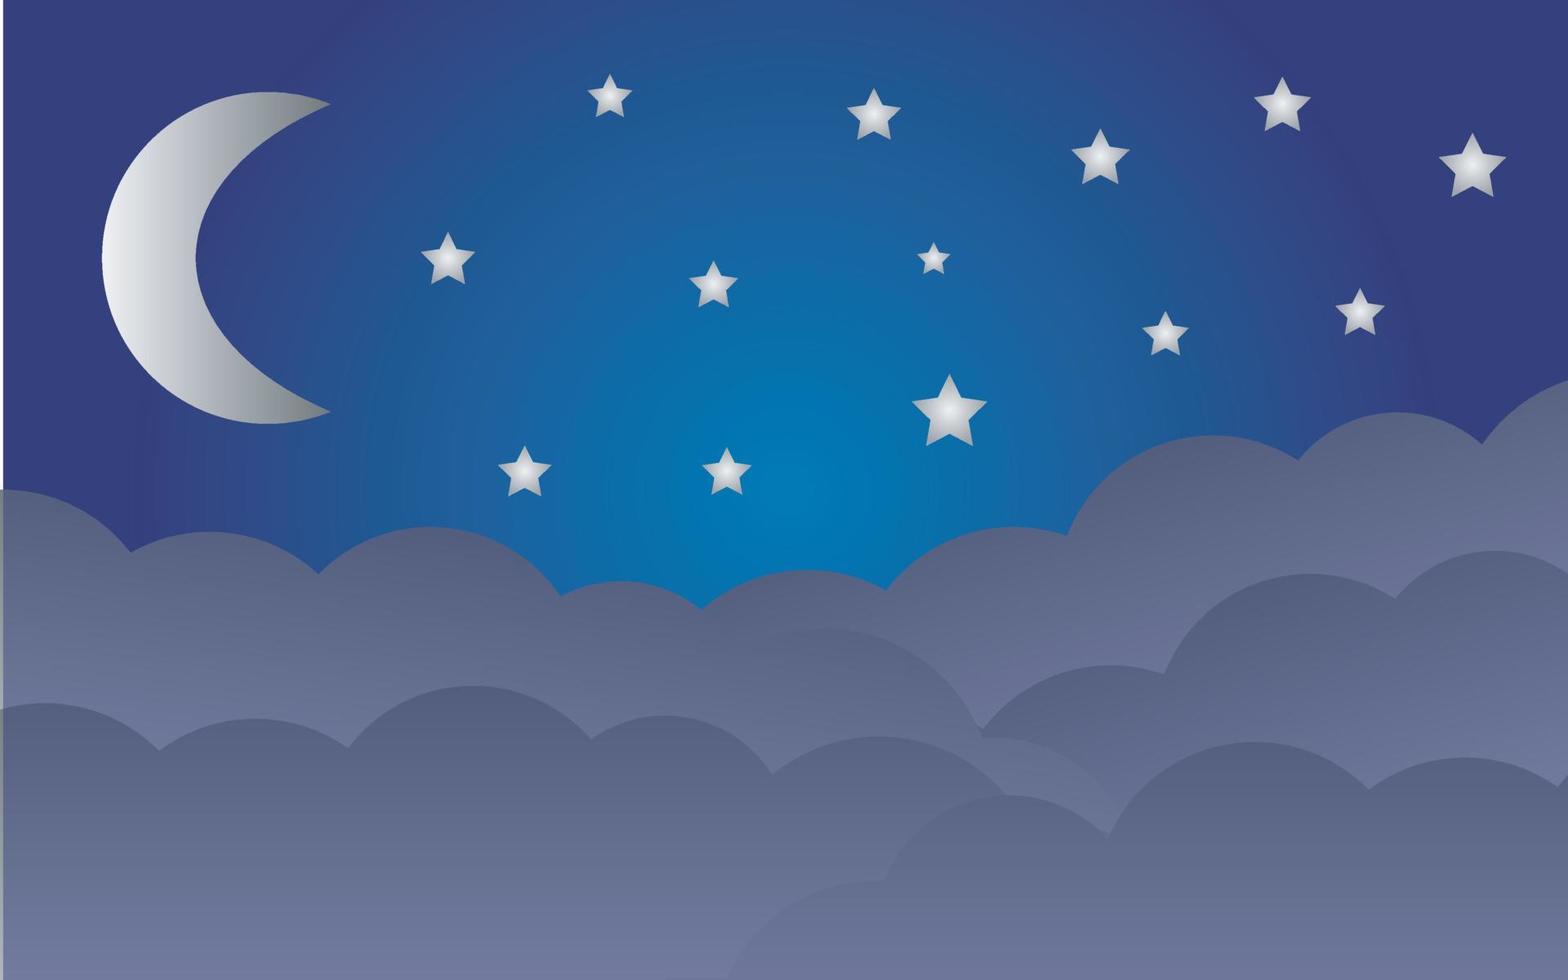 natt himmel mörk blå bakgrund med halvmåne måne stjärnor och moln vektor